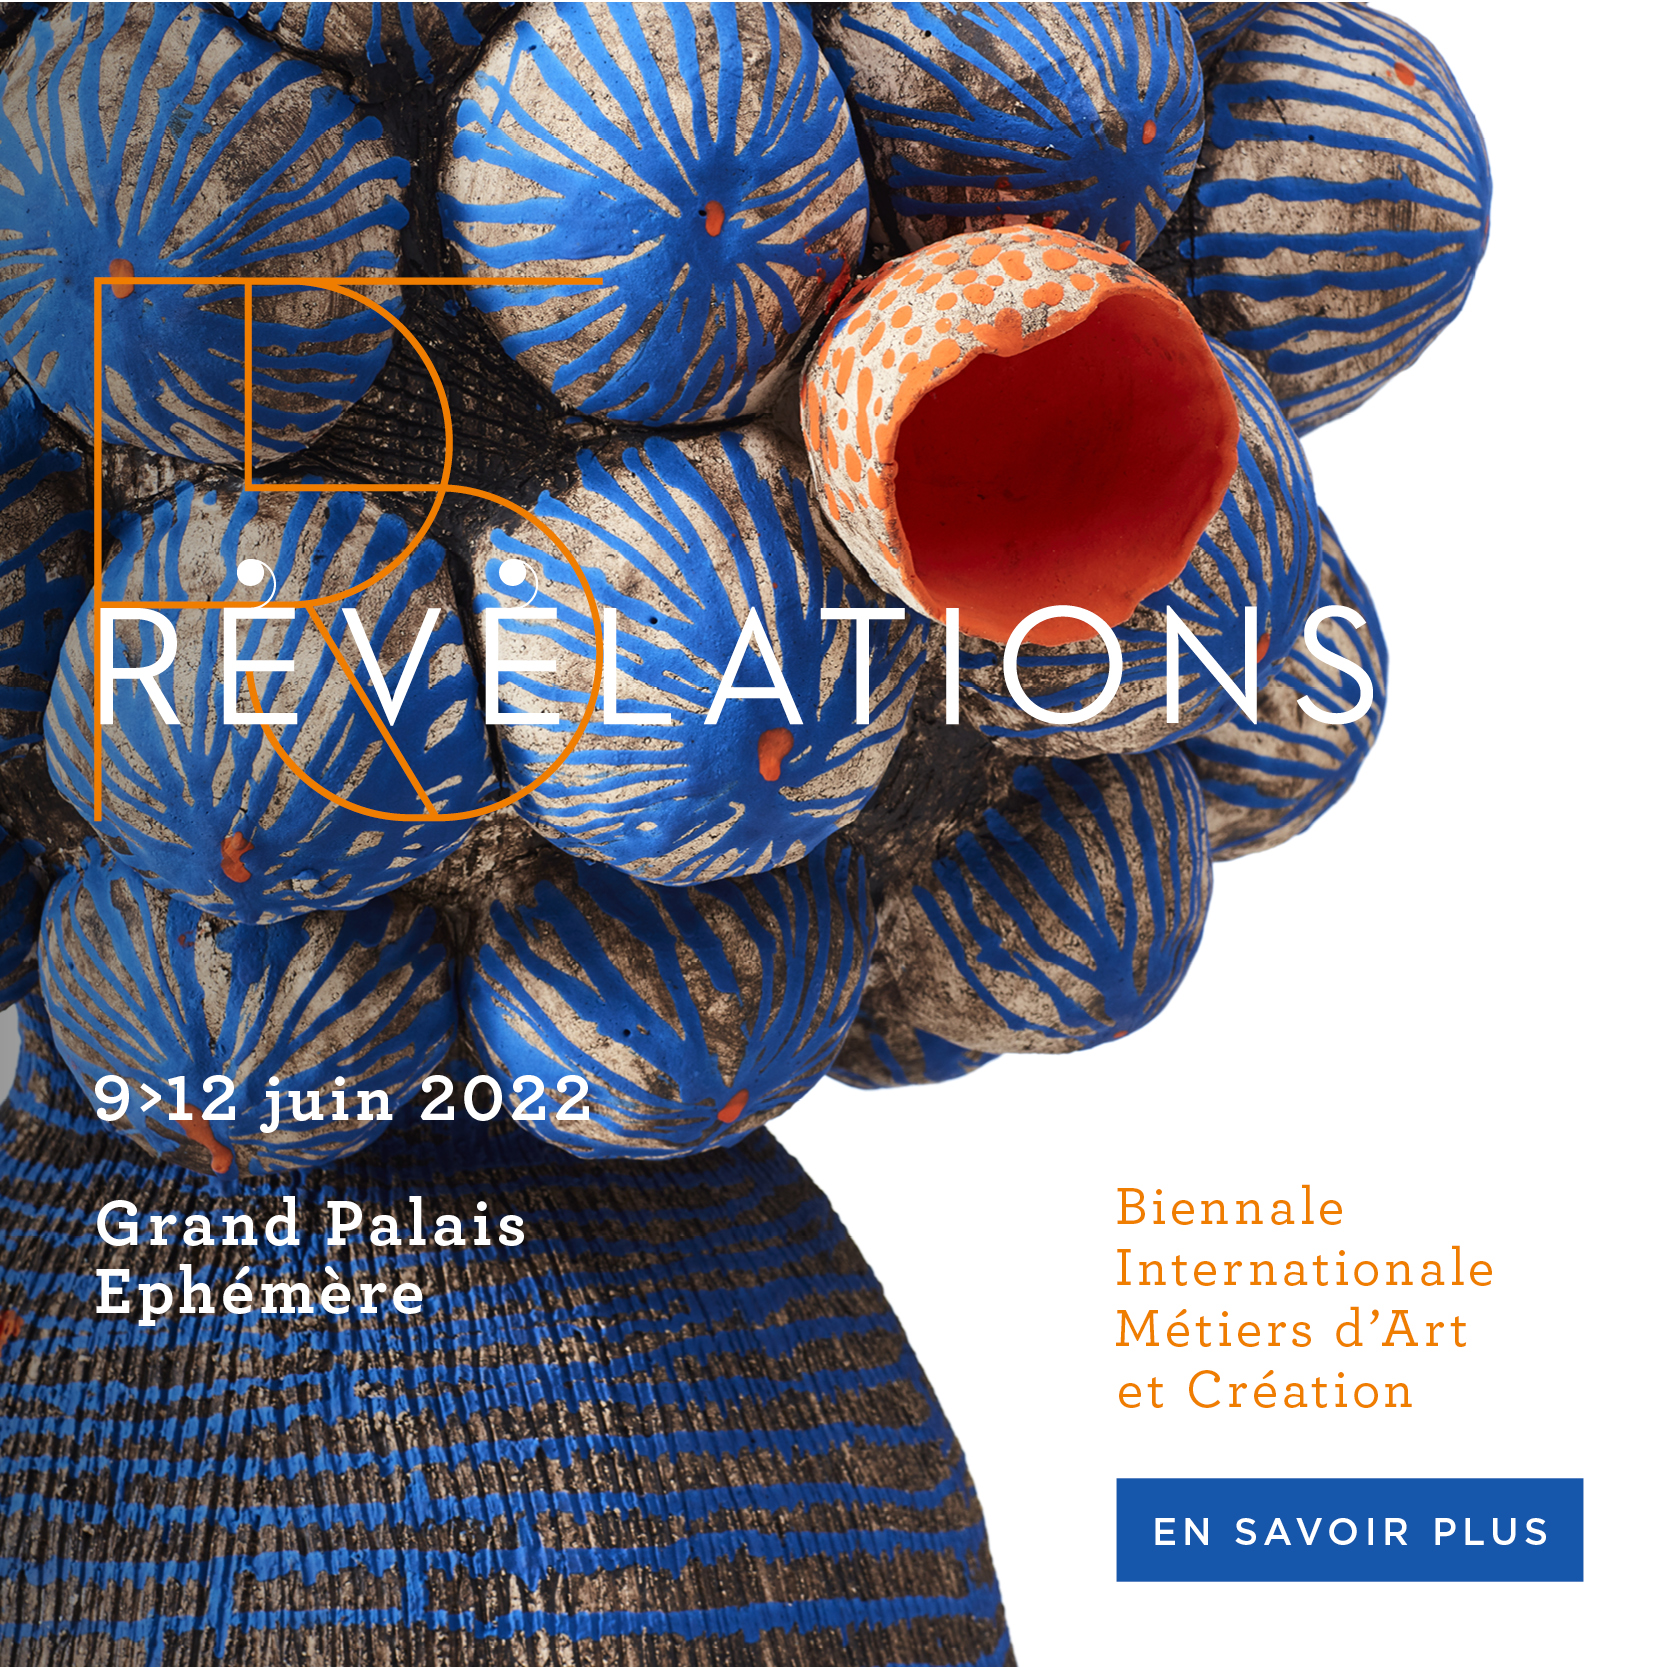 La 5ème édition de Révélations se tient du 9 au 12 juin 2022 au Grand Palais Ephémère